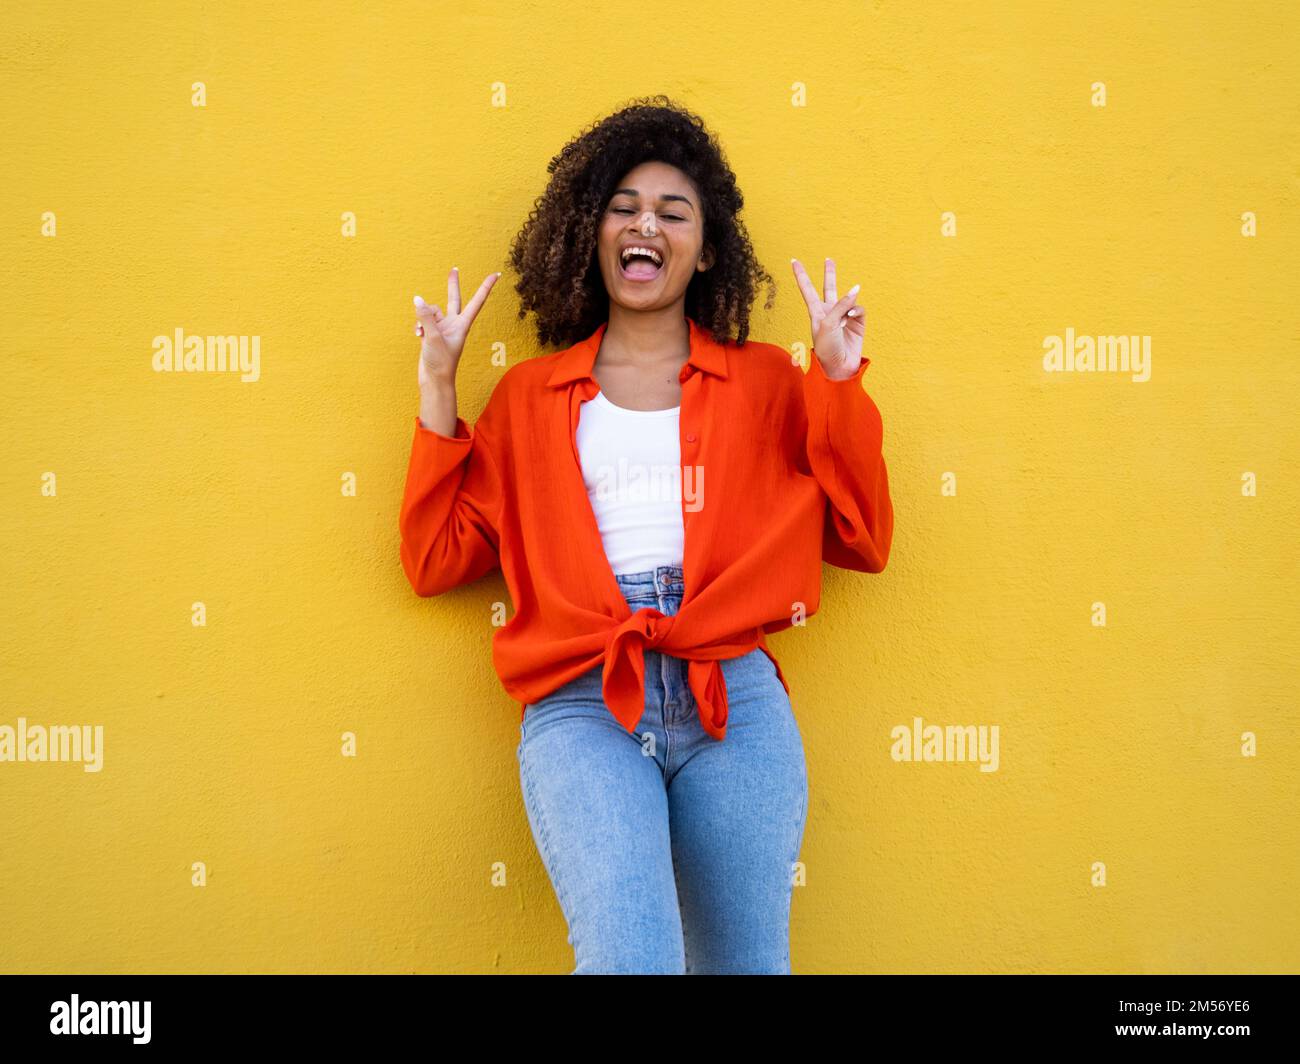 Fröhliche afroamerikanische junge Frau, die lächelt und ein Siegessymbol mit Händen über der gelben Wand macht. Eine Geste zum Siegesfeiern Stockfoto